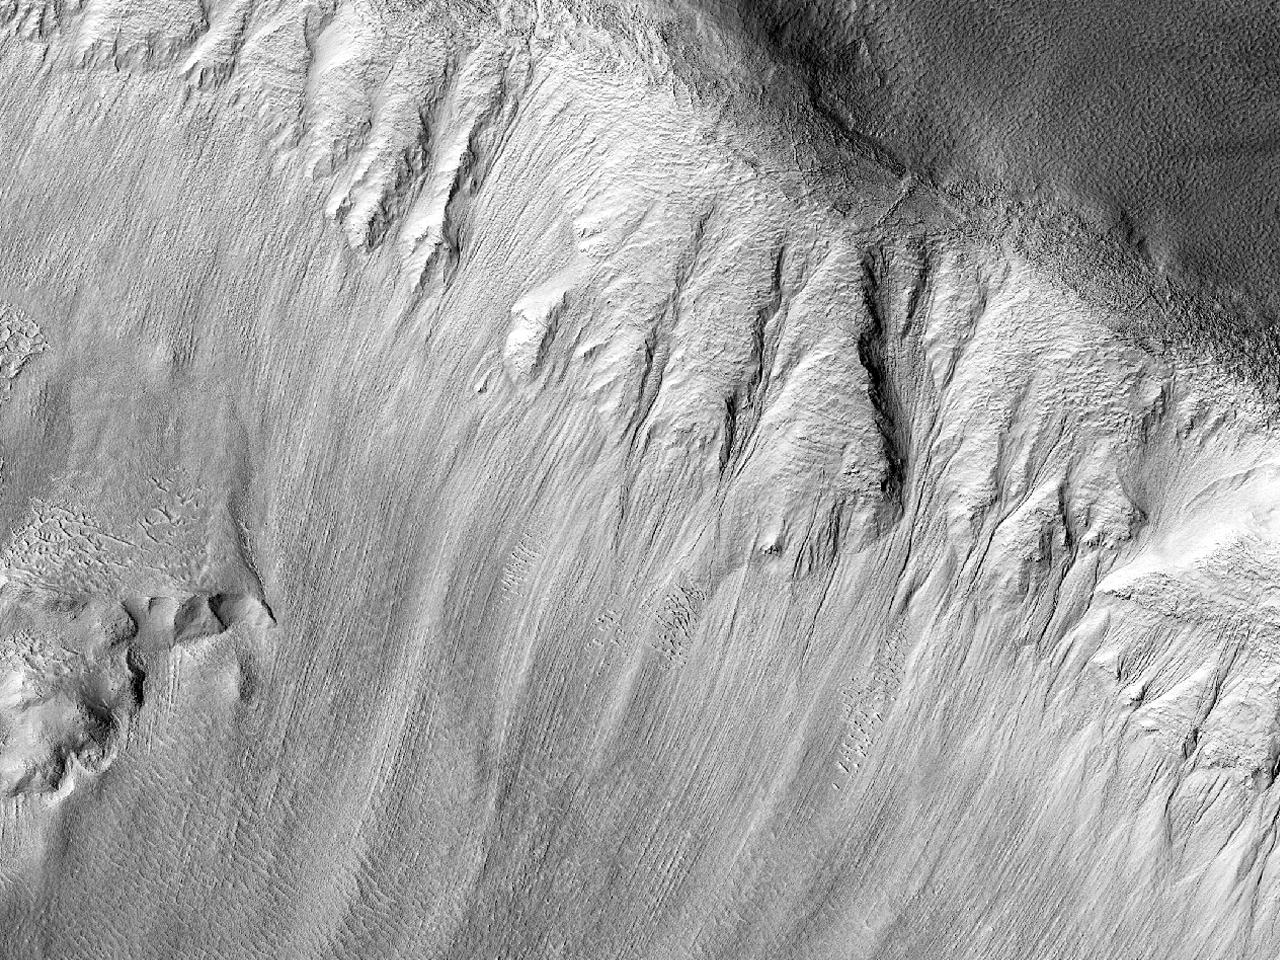 Eblaj ravinetoj en norda mezlatituda kratero